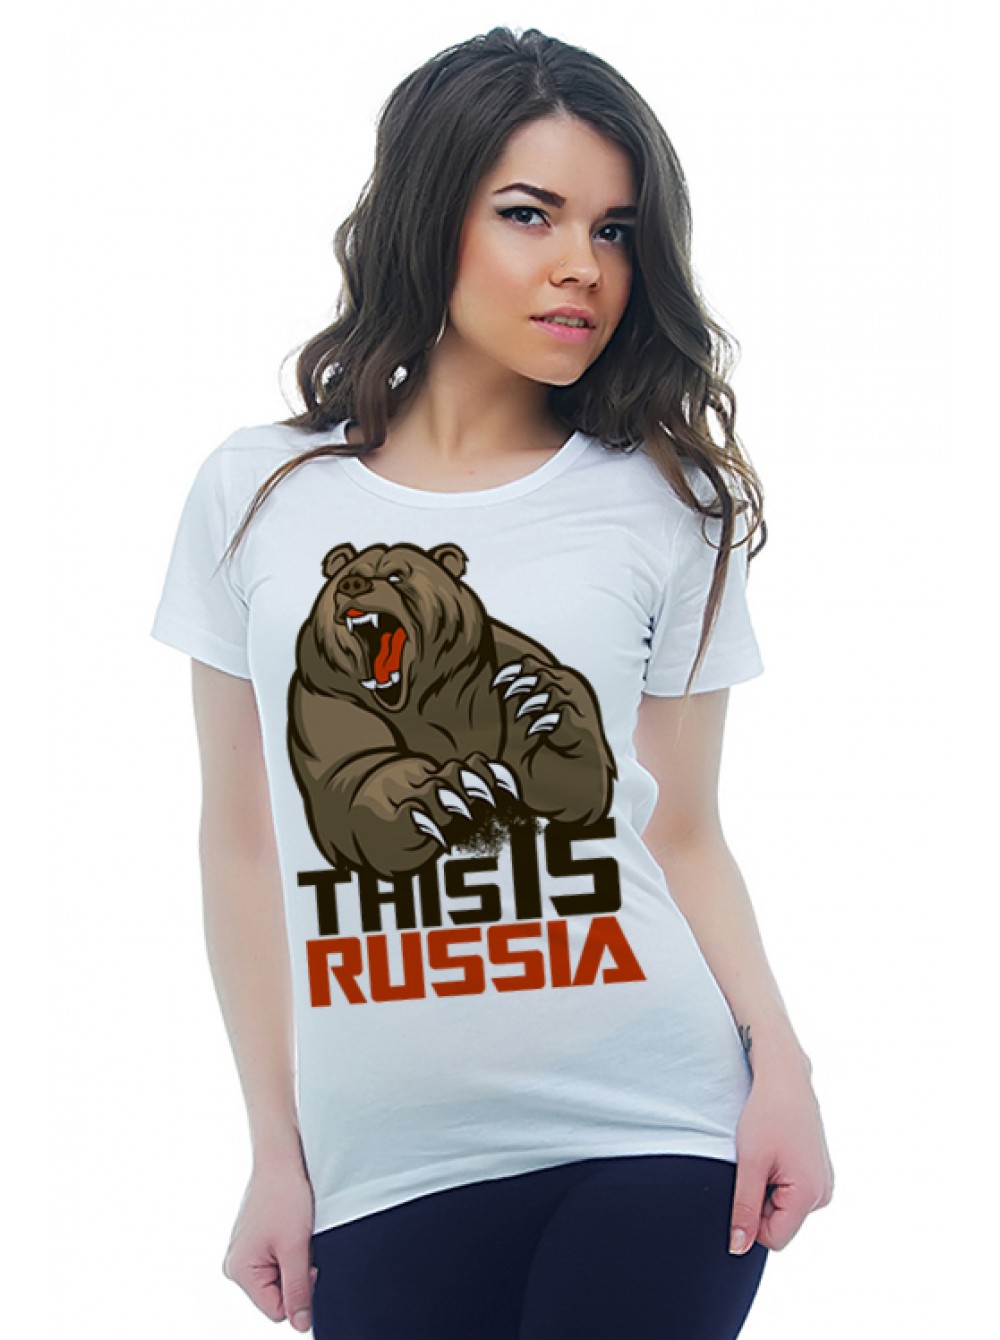 Ис раша. This is хорошо футболка. This is Russia. Футболка this is me.